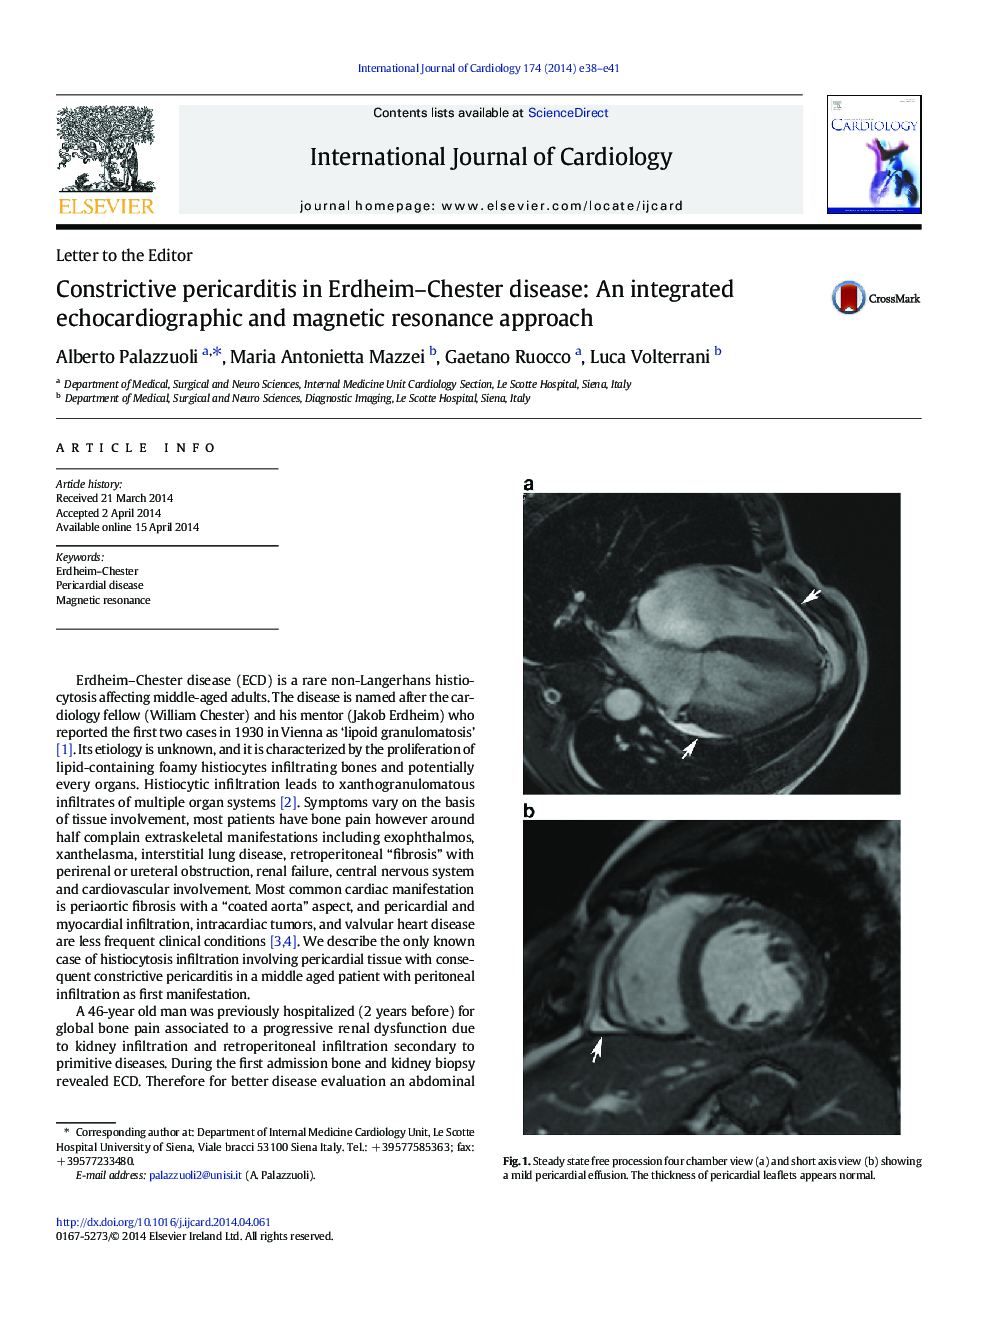 پریکاردیت انسدادی در بیماری اردهام-چستر: رویکرد یکپارچه اکوکاردیوگرافی و رزونانس مغناطیسی 